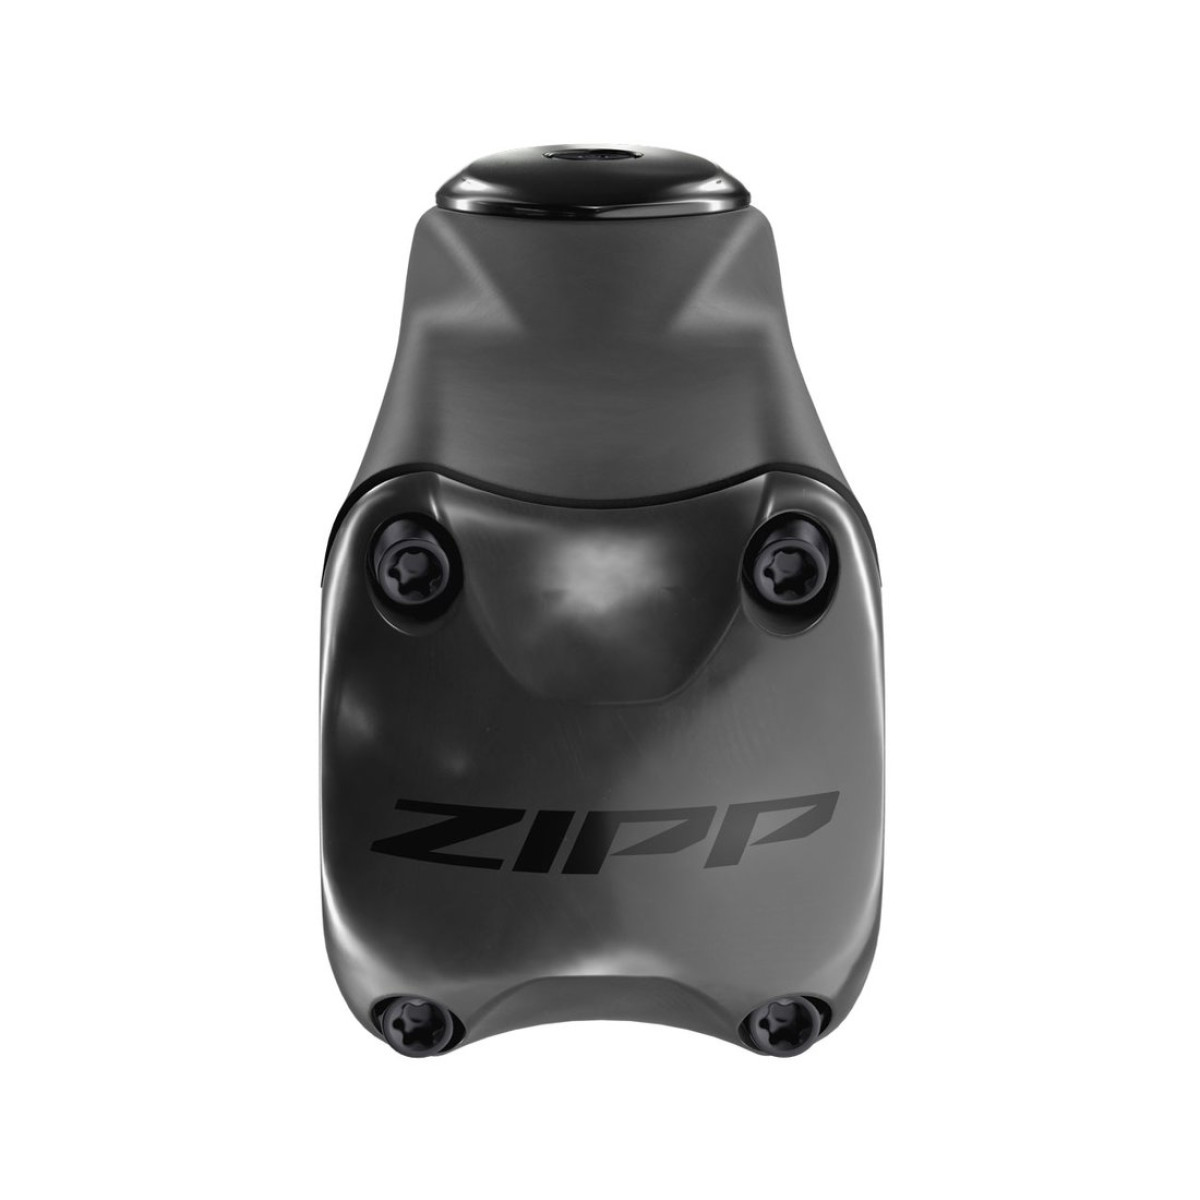 Zipp SL Sprint Carbon vairo iškyša